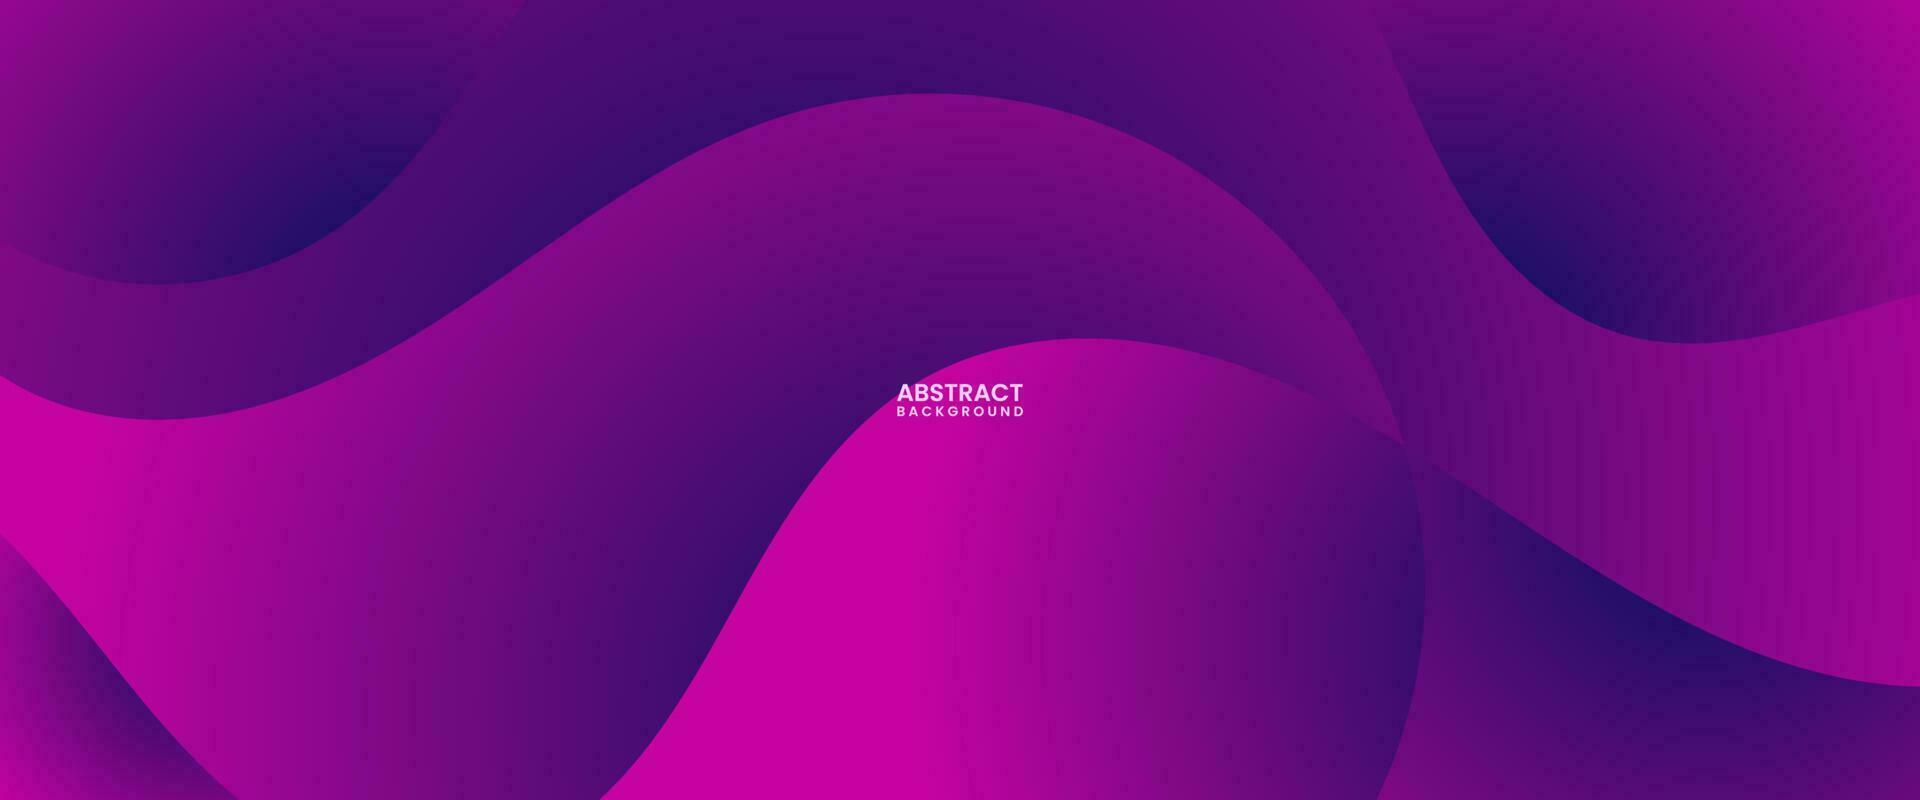 abstract roze kleurrijk helling achtergrond vector illustratie